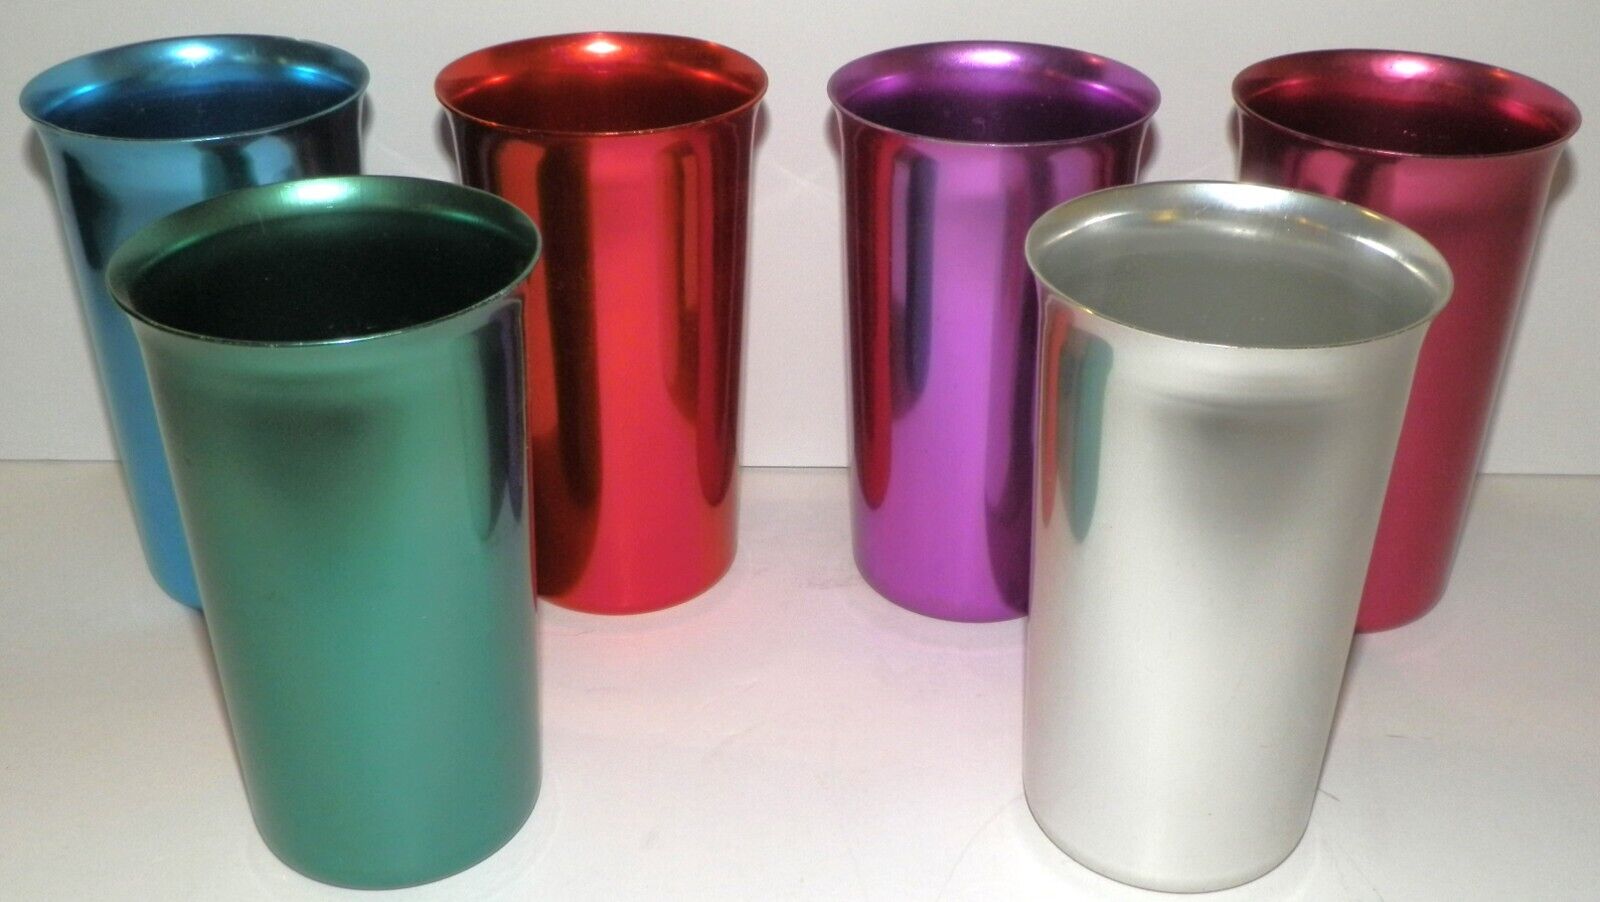 Sunburst Aluminum Tumblers Cups Vintage Retro Lot of 6